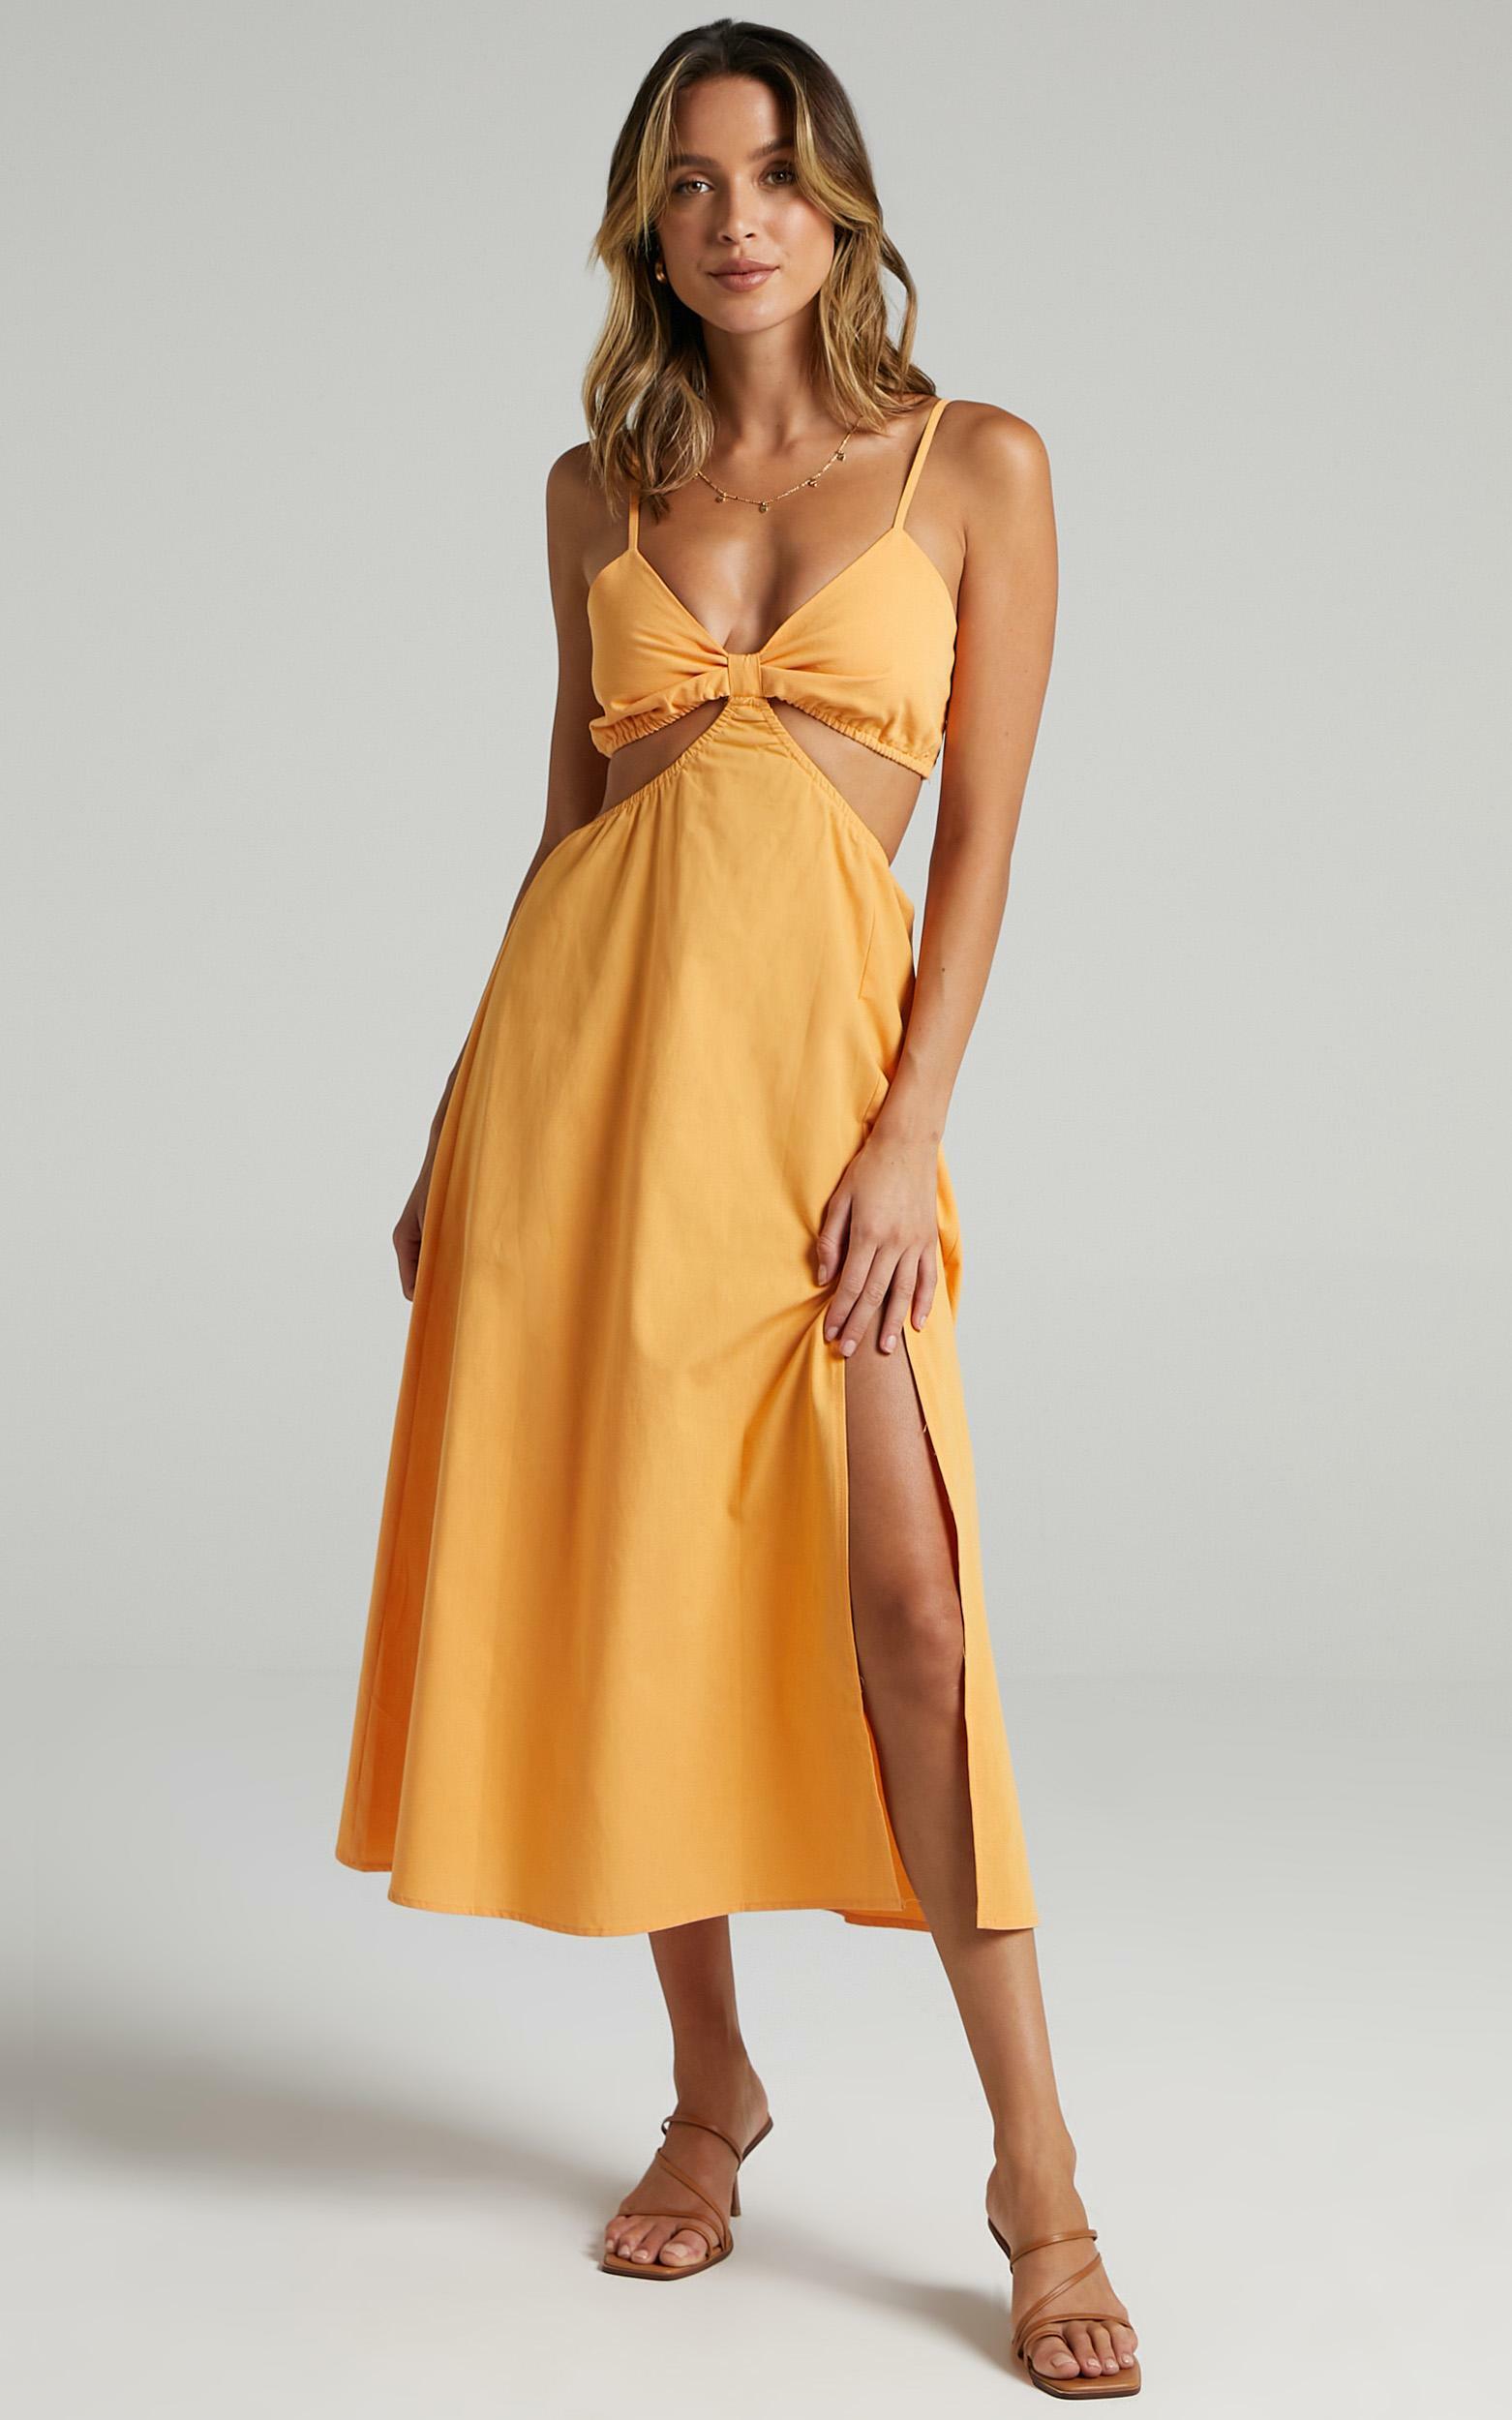 Melyssa Dress in Orange - 06, ORG2, hi-res image number null